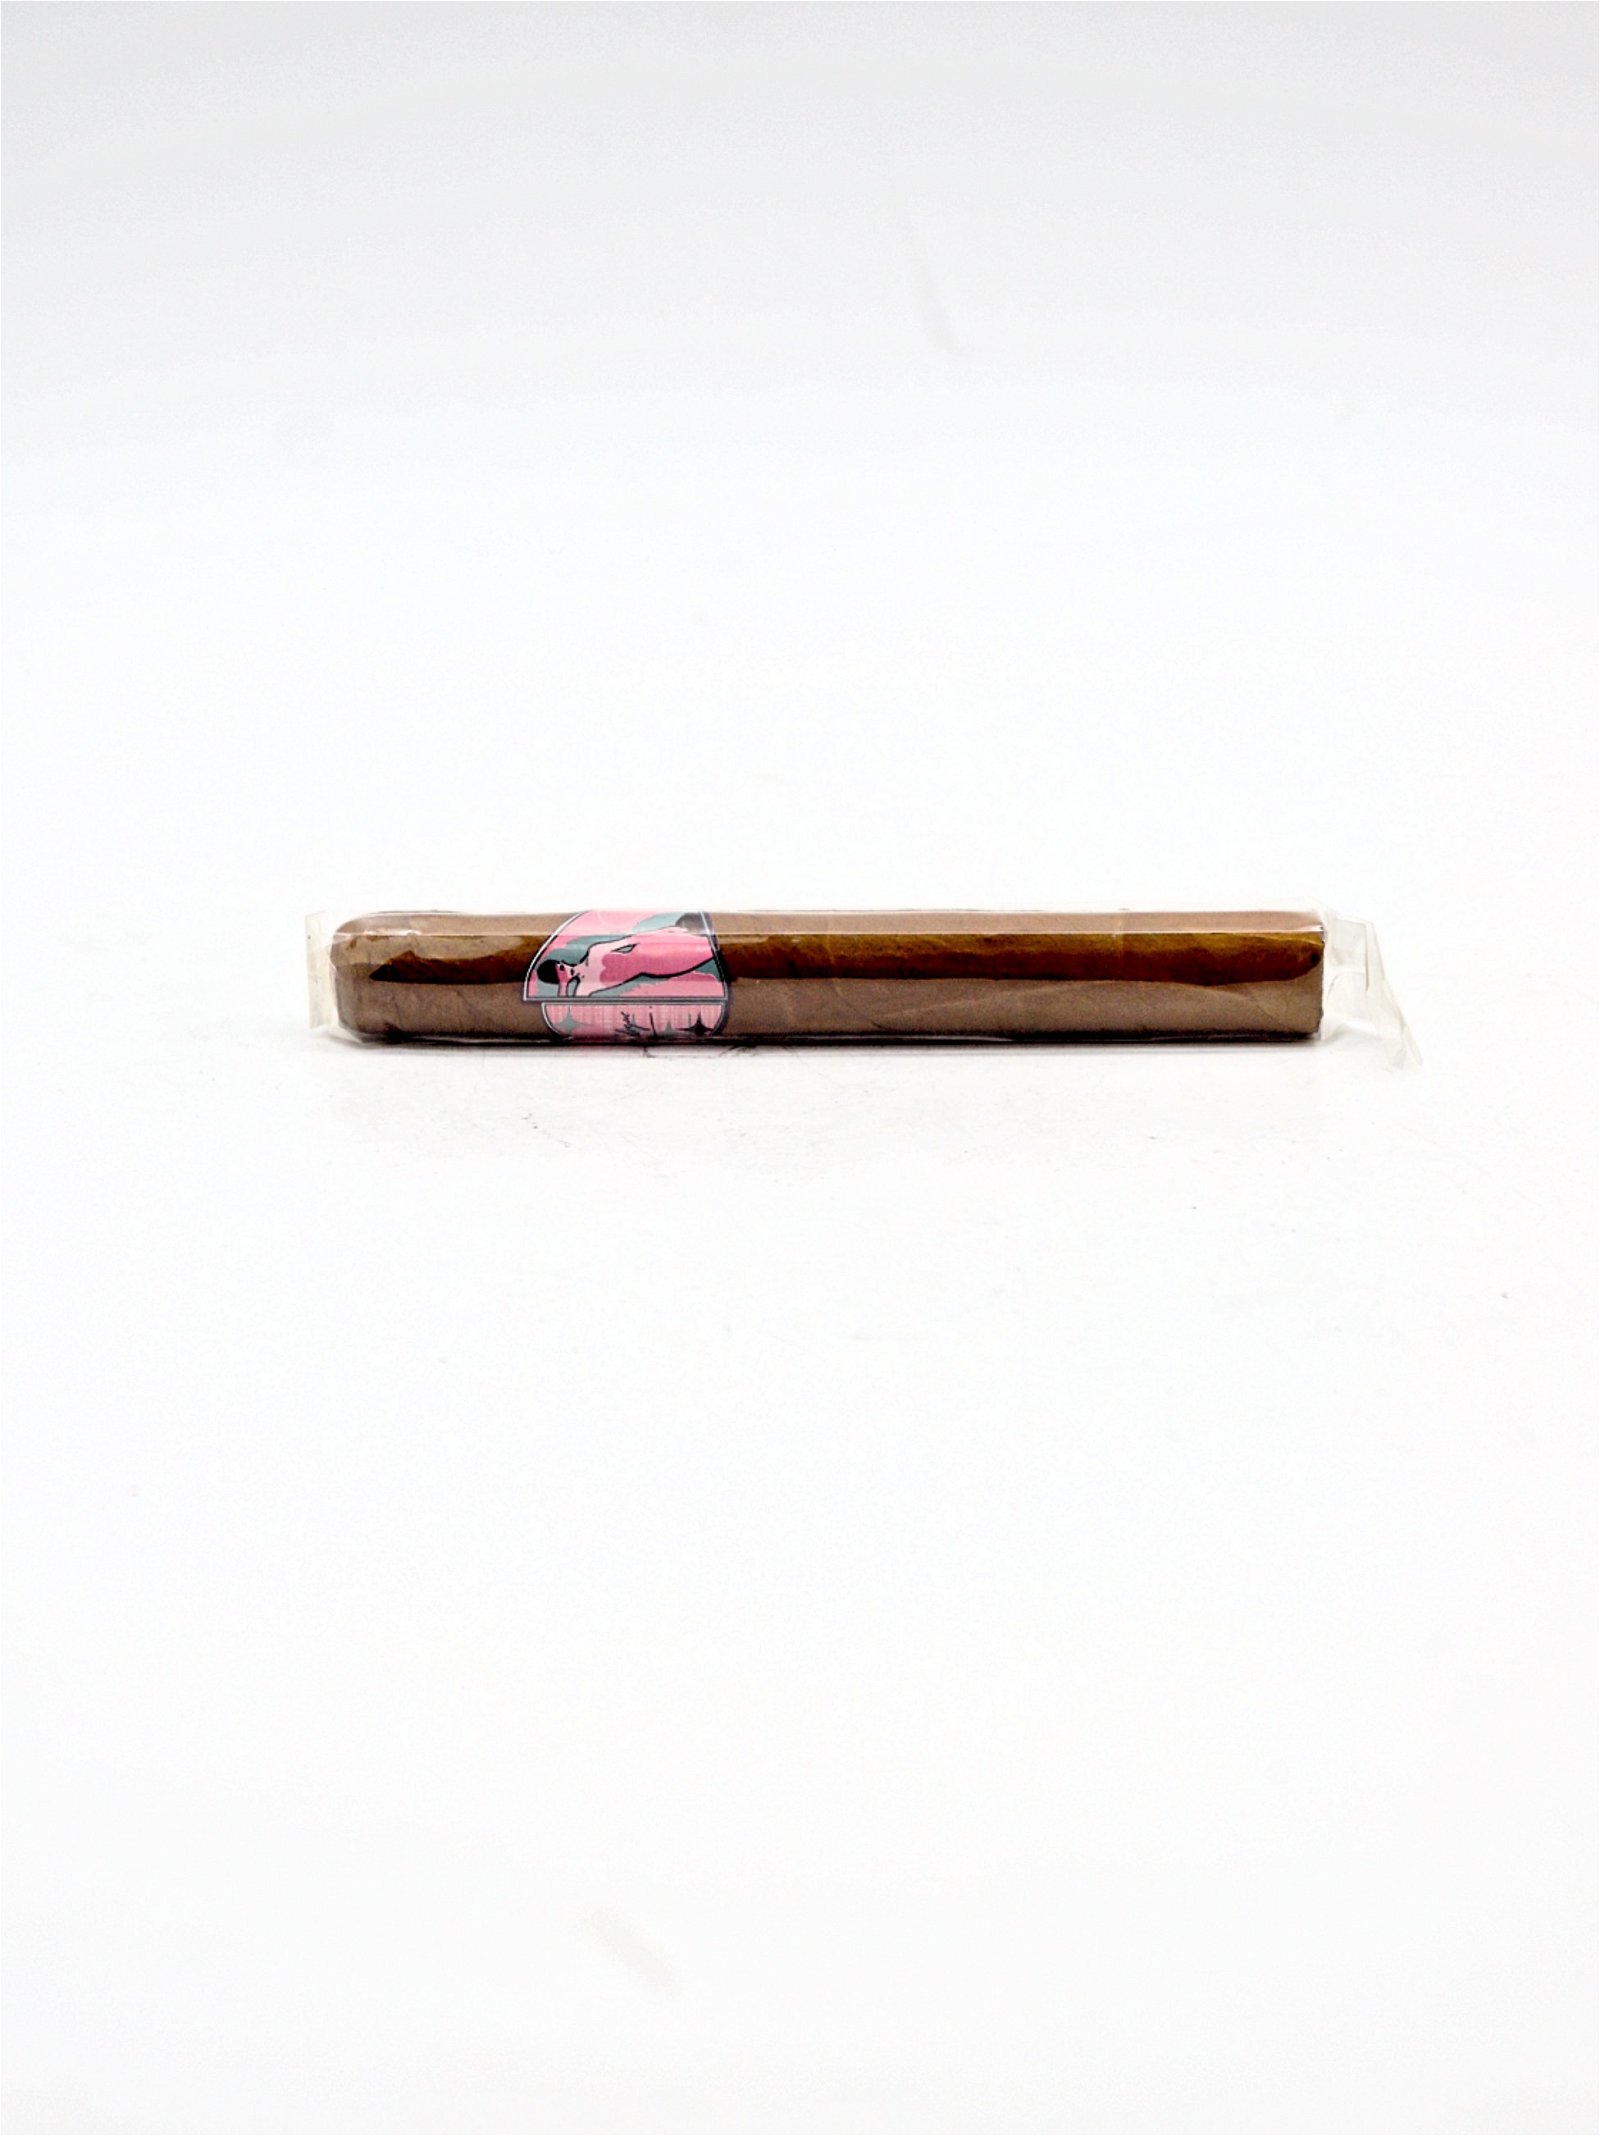 Principle Cigars Angelique